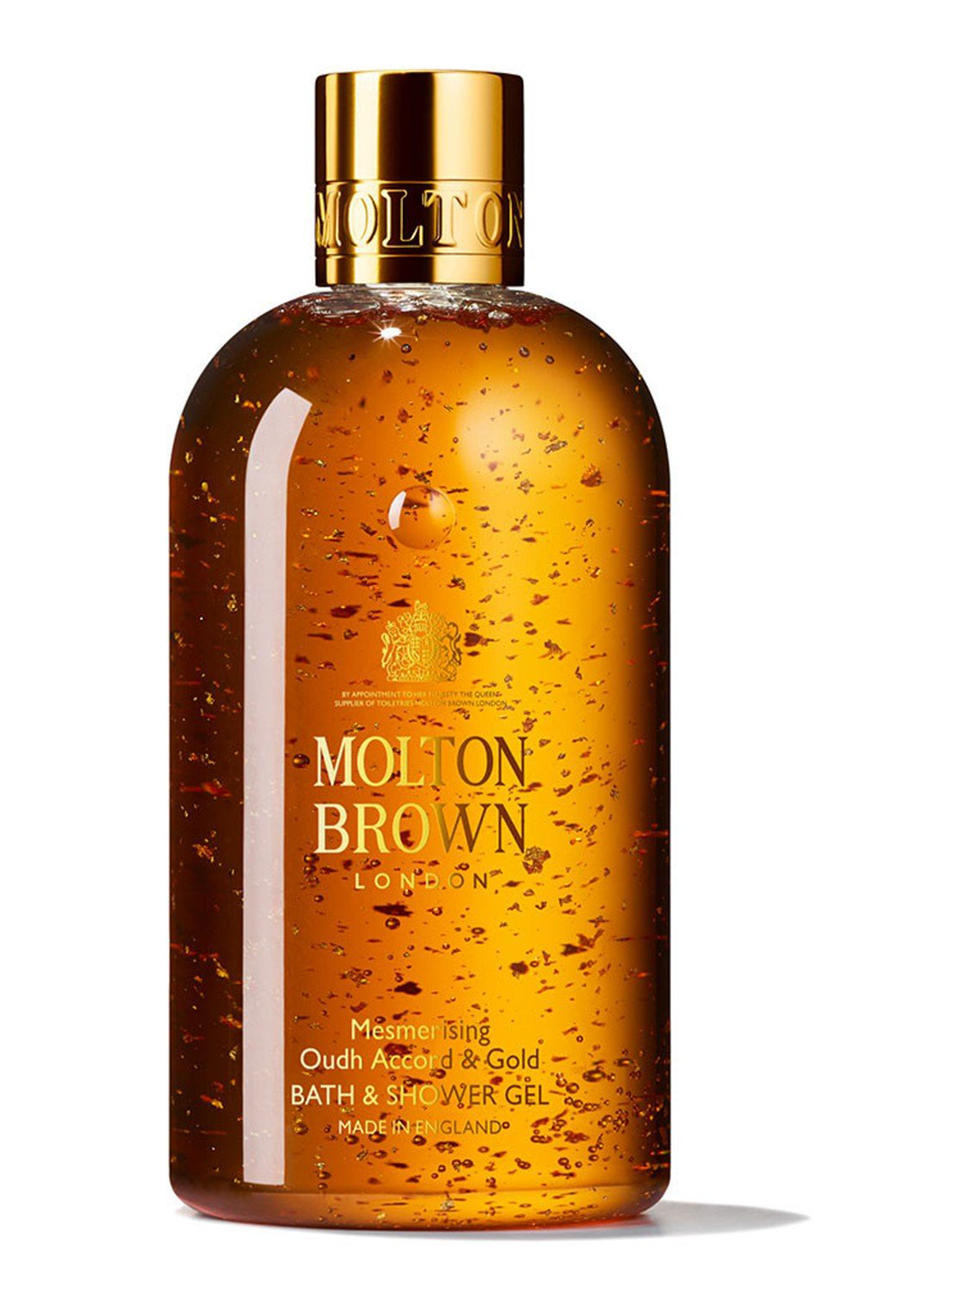 Molton brown Londen bath & shower gel